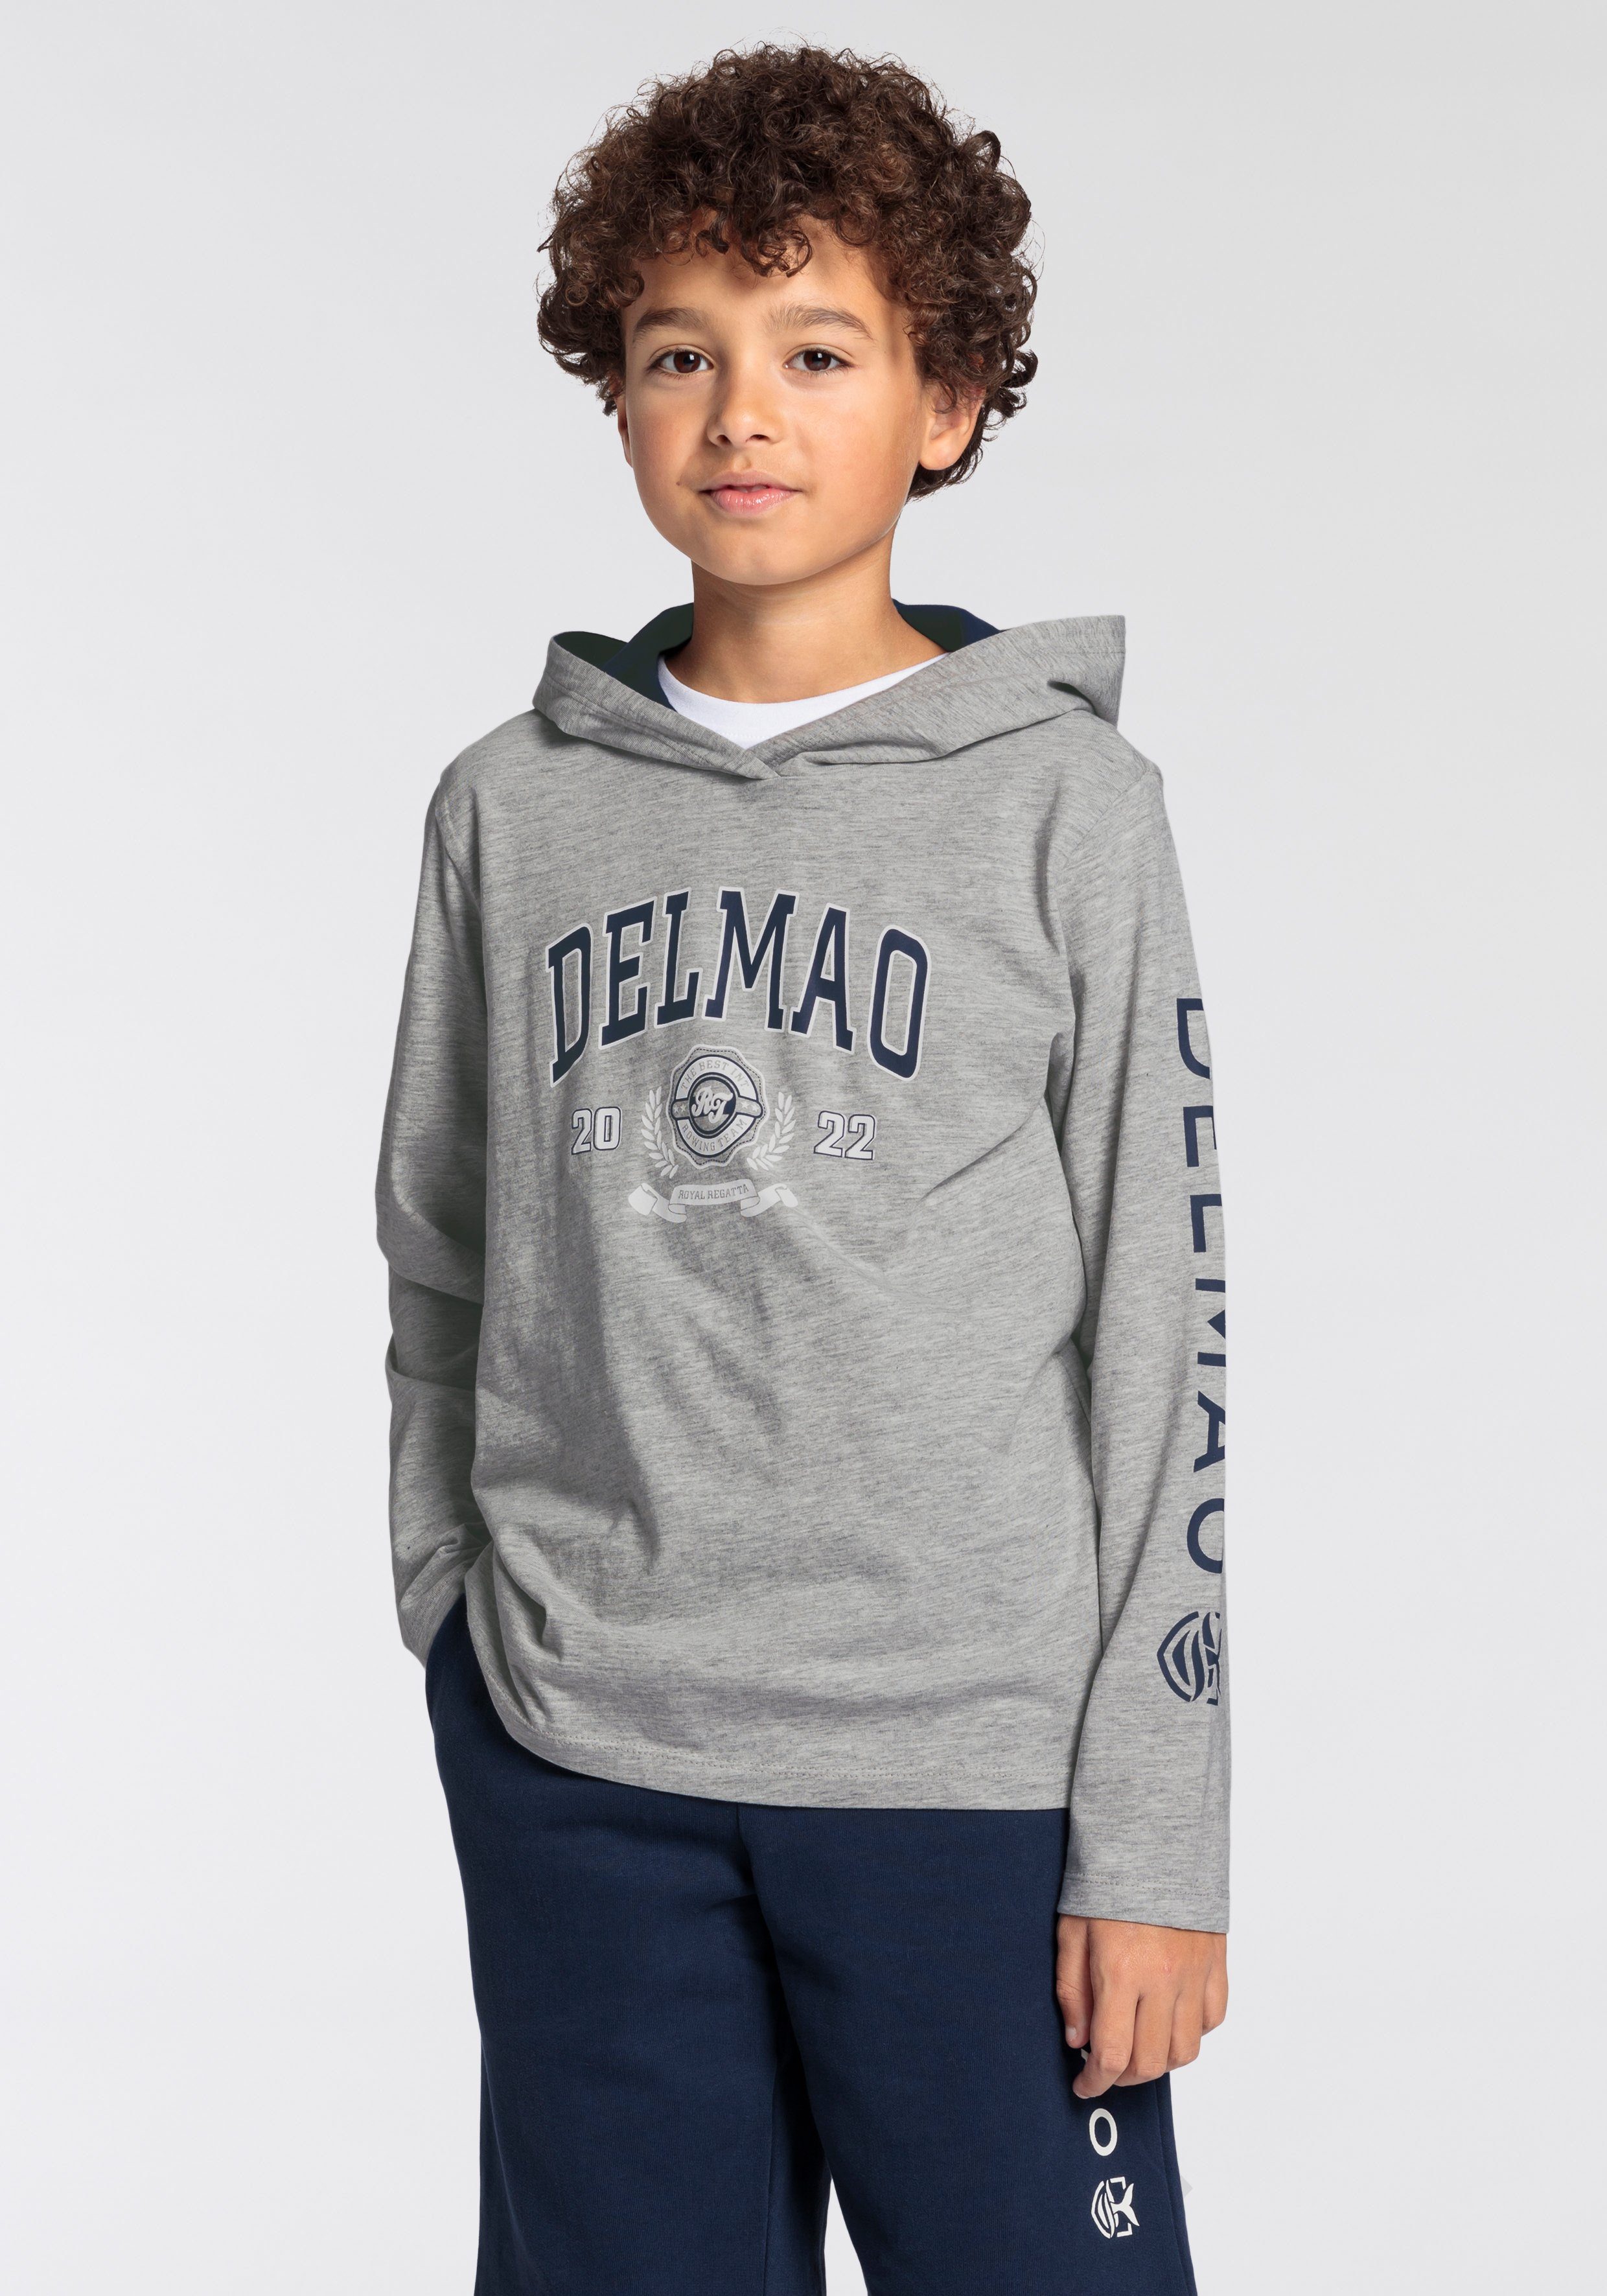 DELMAO Kapuzenshirt für Jungen, mit Ärmeldruck. NEUE MARKE | Kapuzenshirts